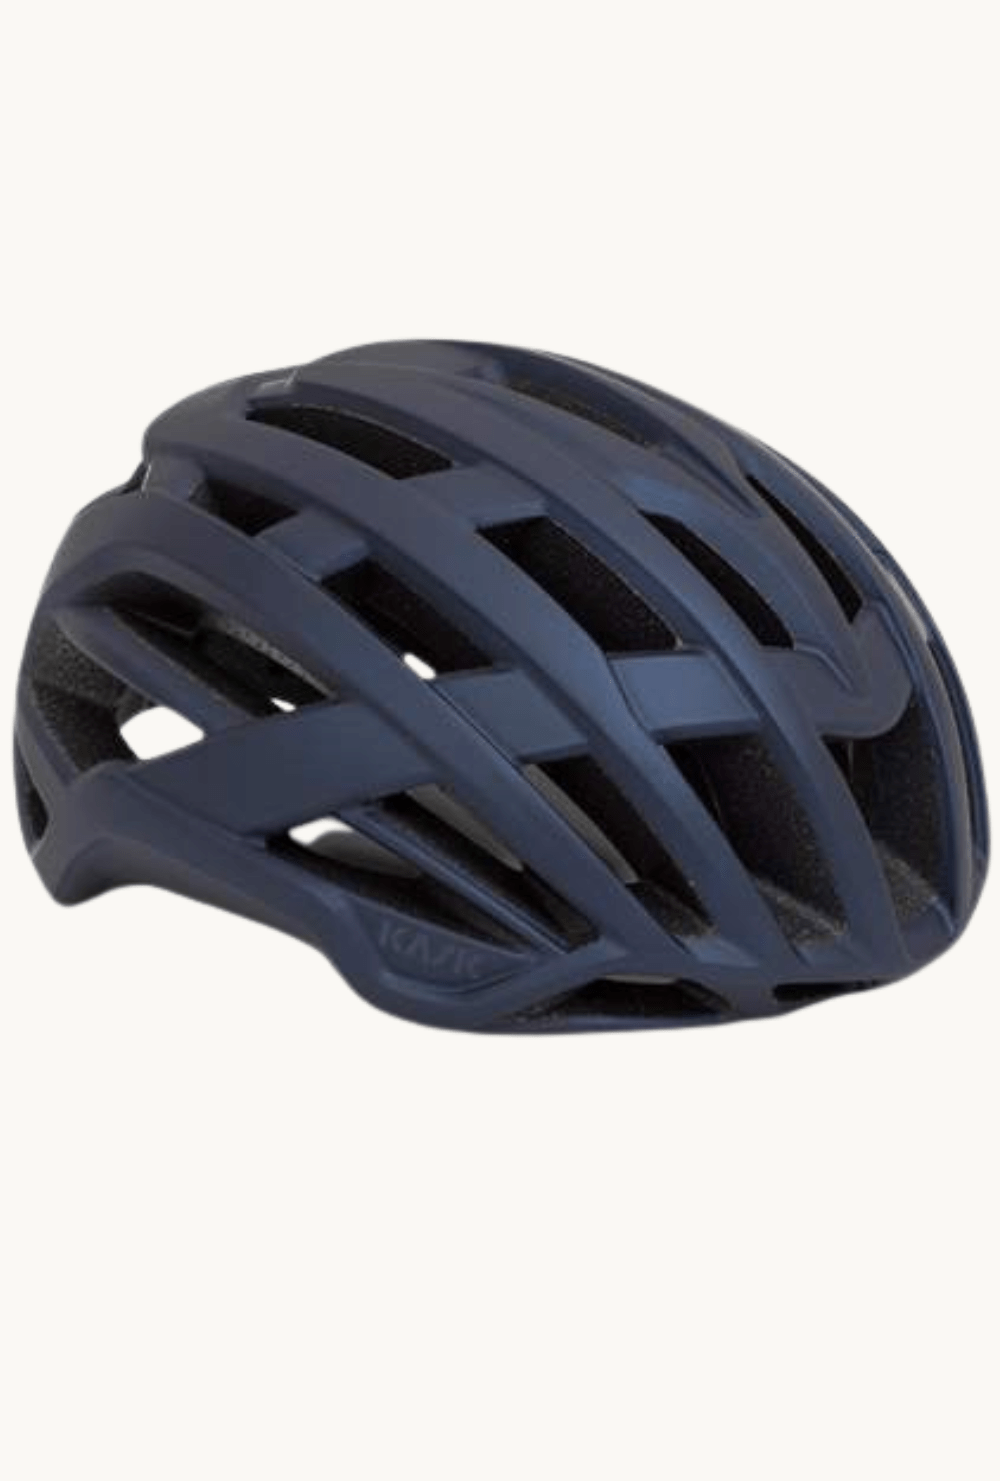 Helmet - Kask Valegro Matt Dark Bluelarge / Matt Dark Blue